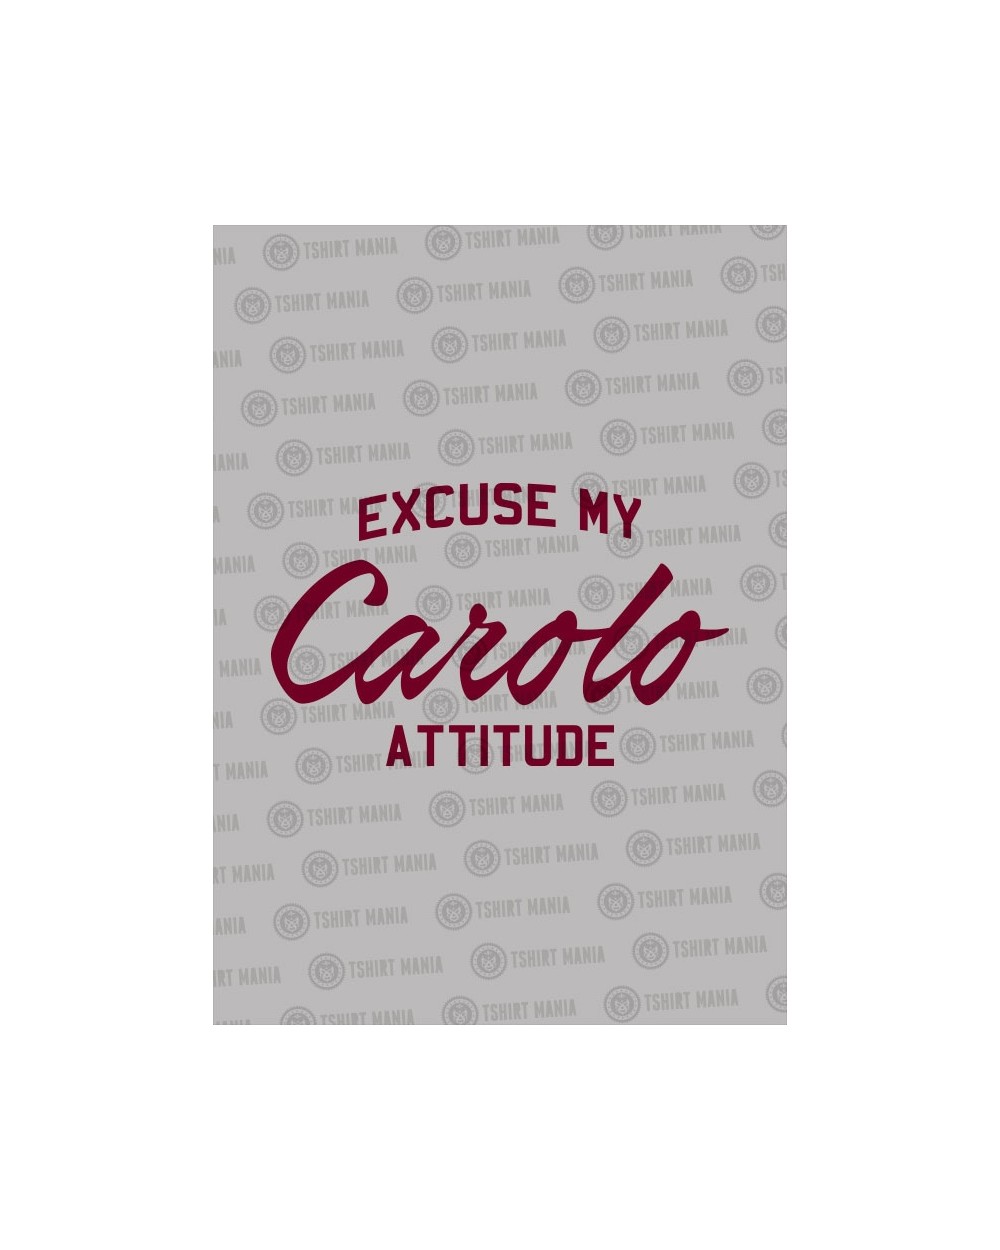 Excuse my Carolo Attitude Kids